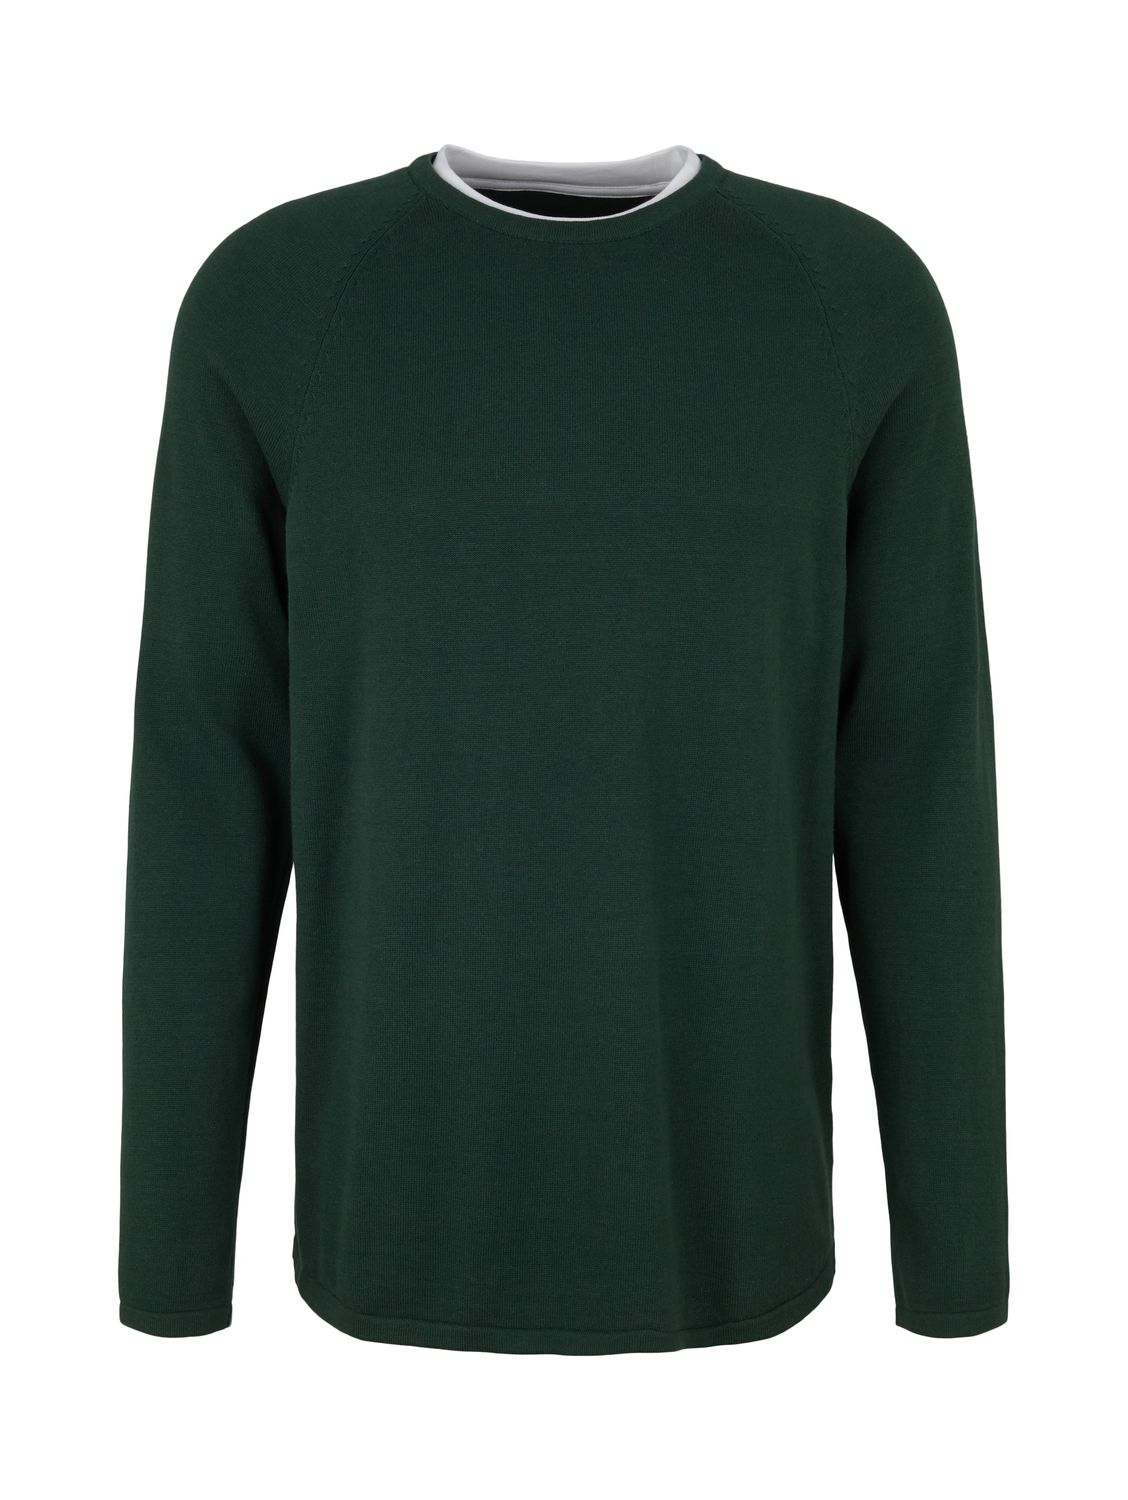 Пуловер TOM TAILOR Denim BASIC, зеленый майка tom tailor хлопок однотонная размер m зеленый